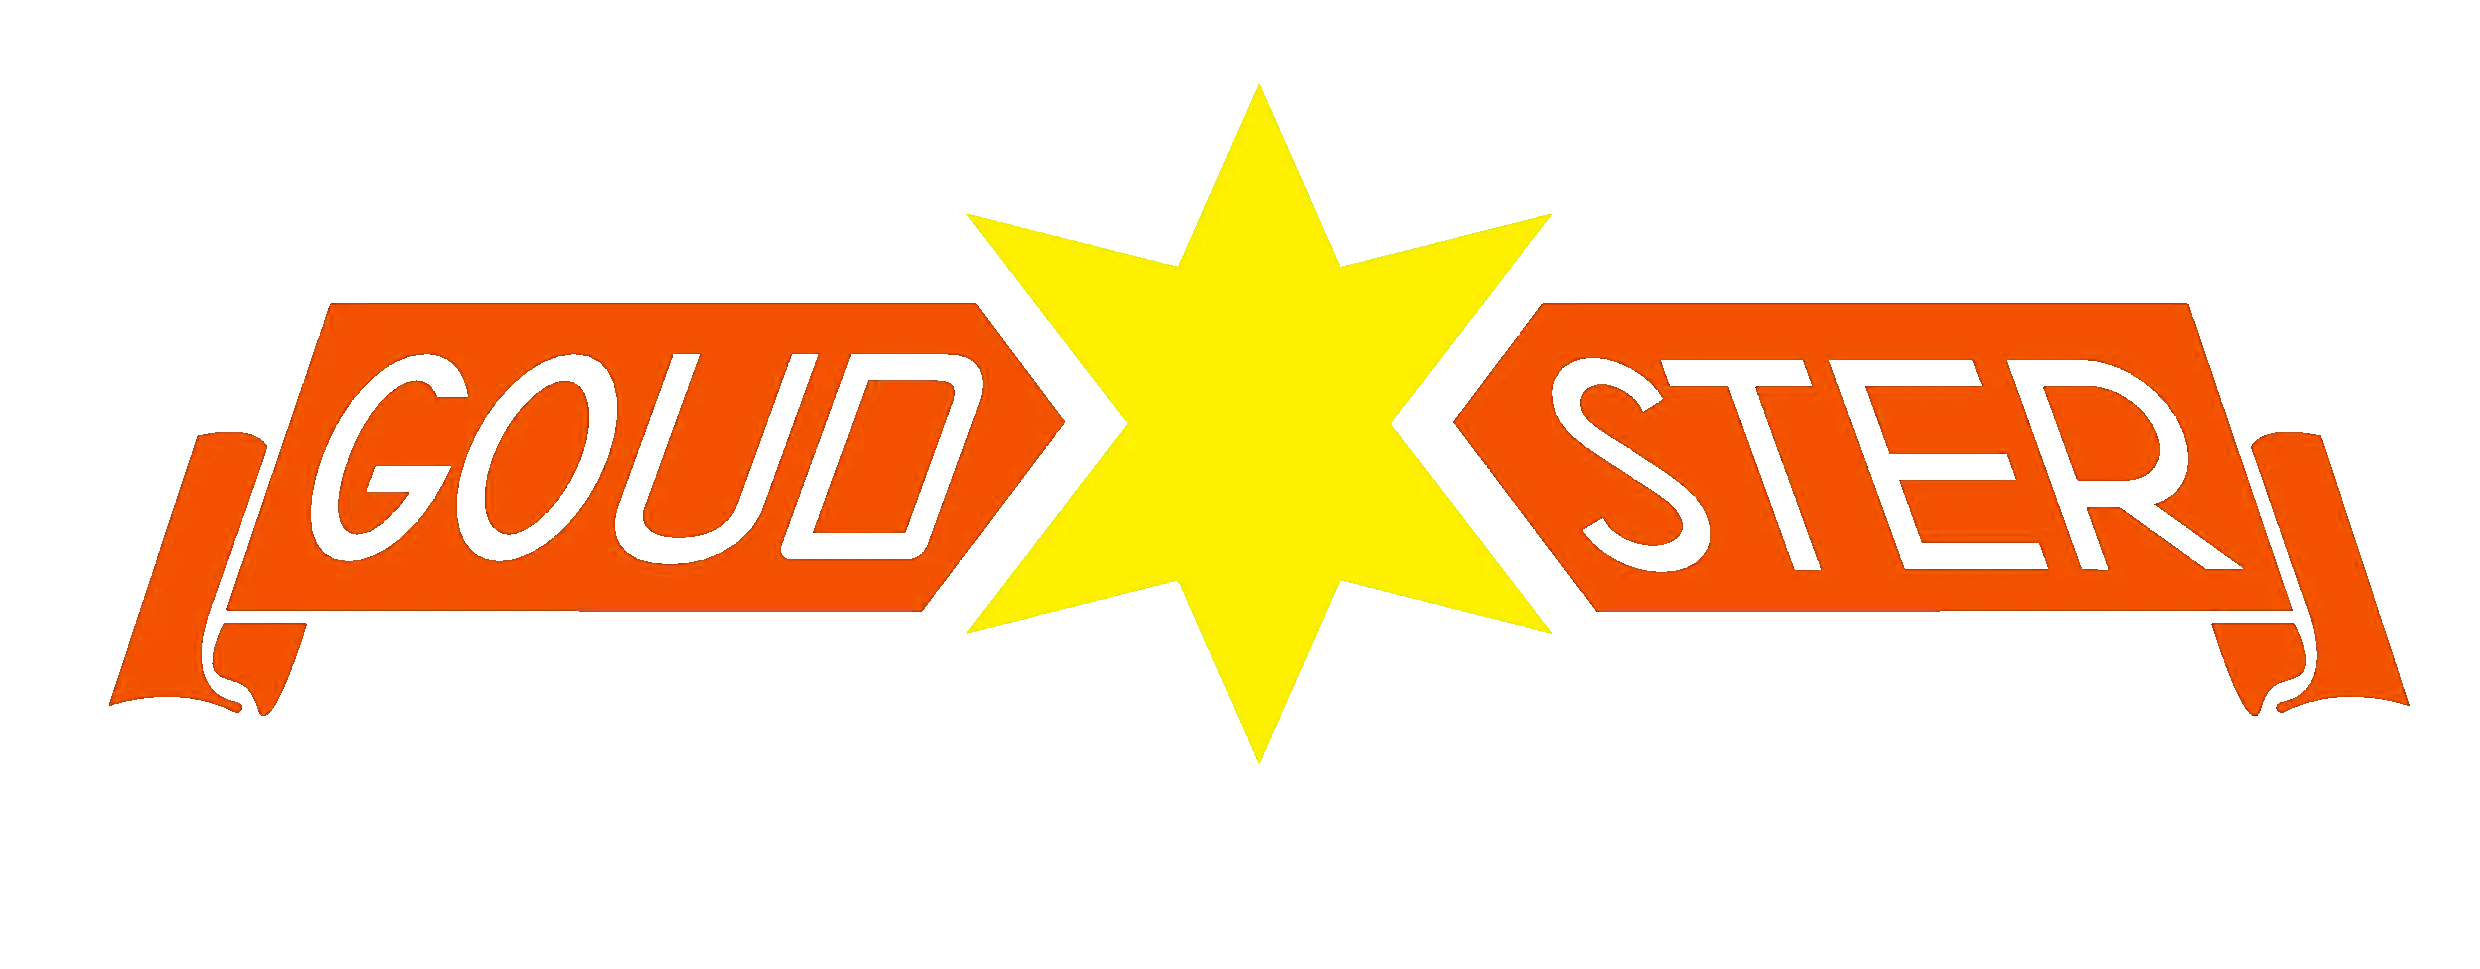 Goudster logo